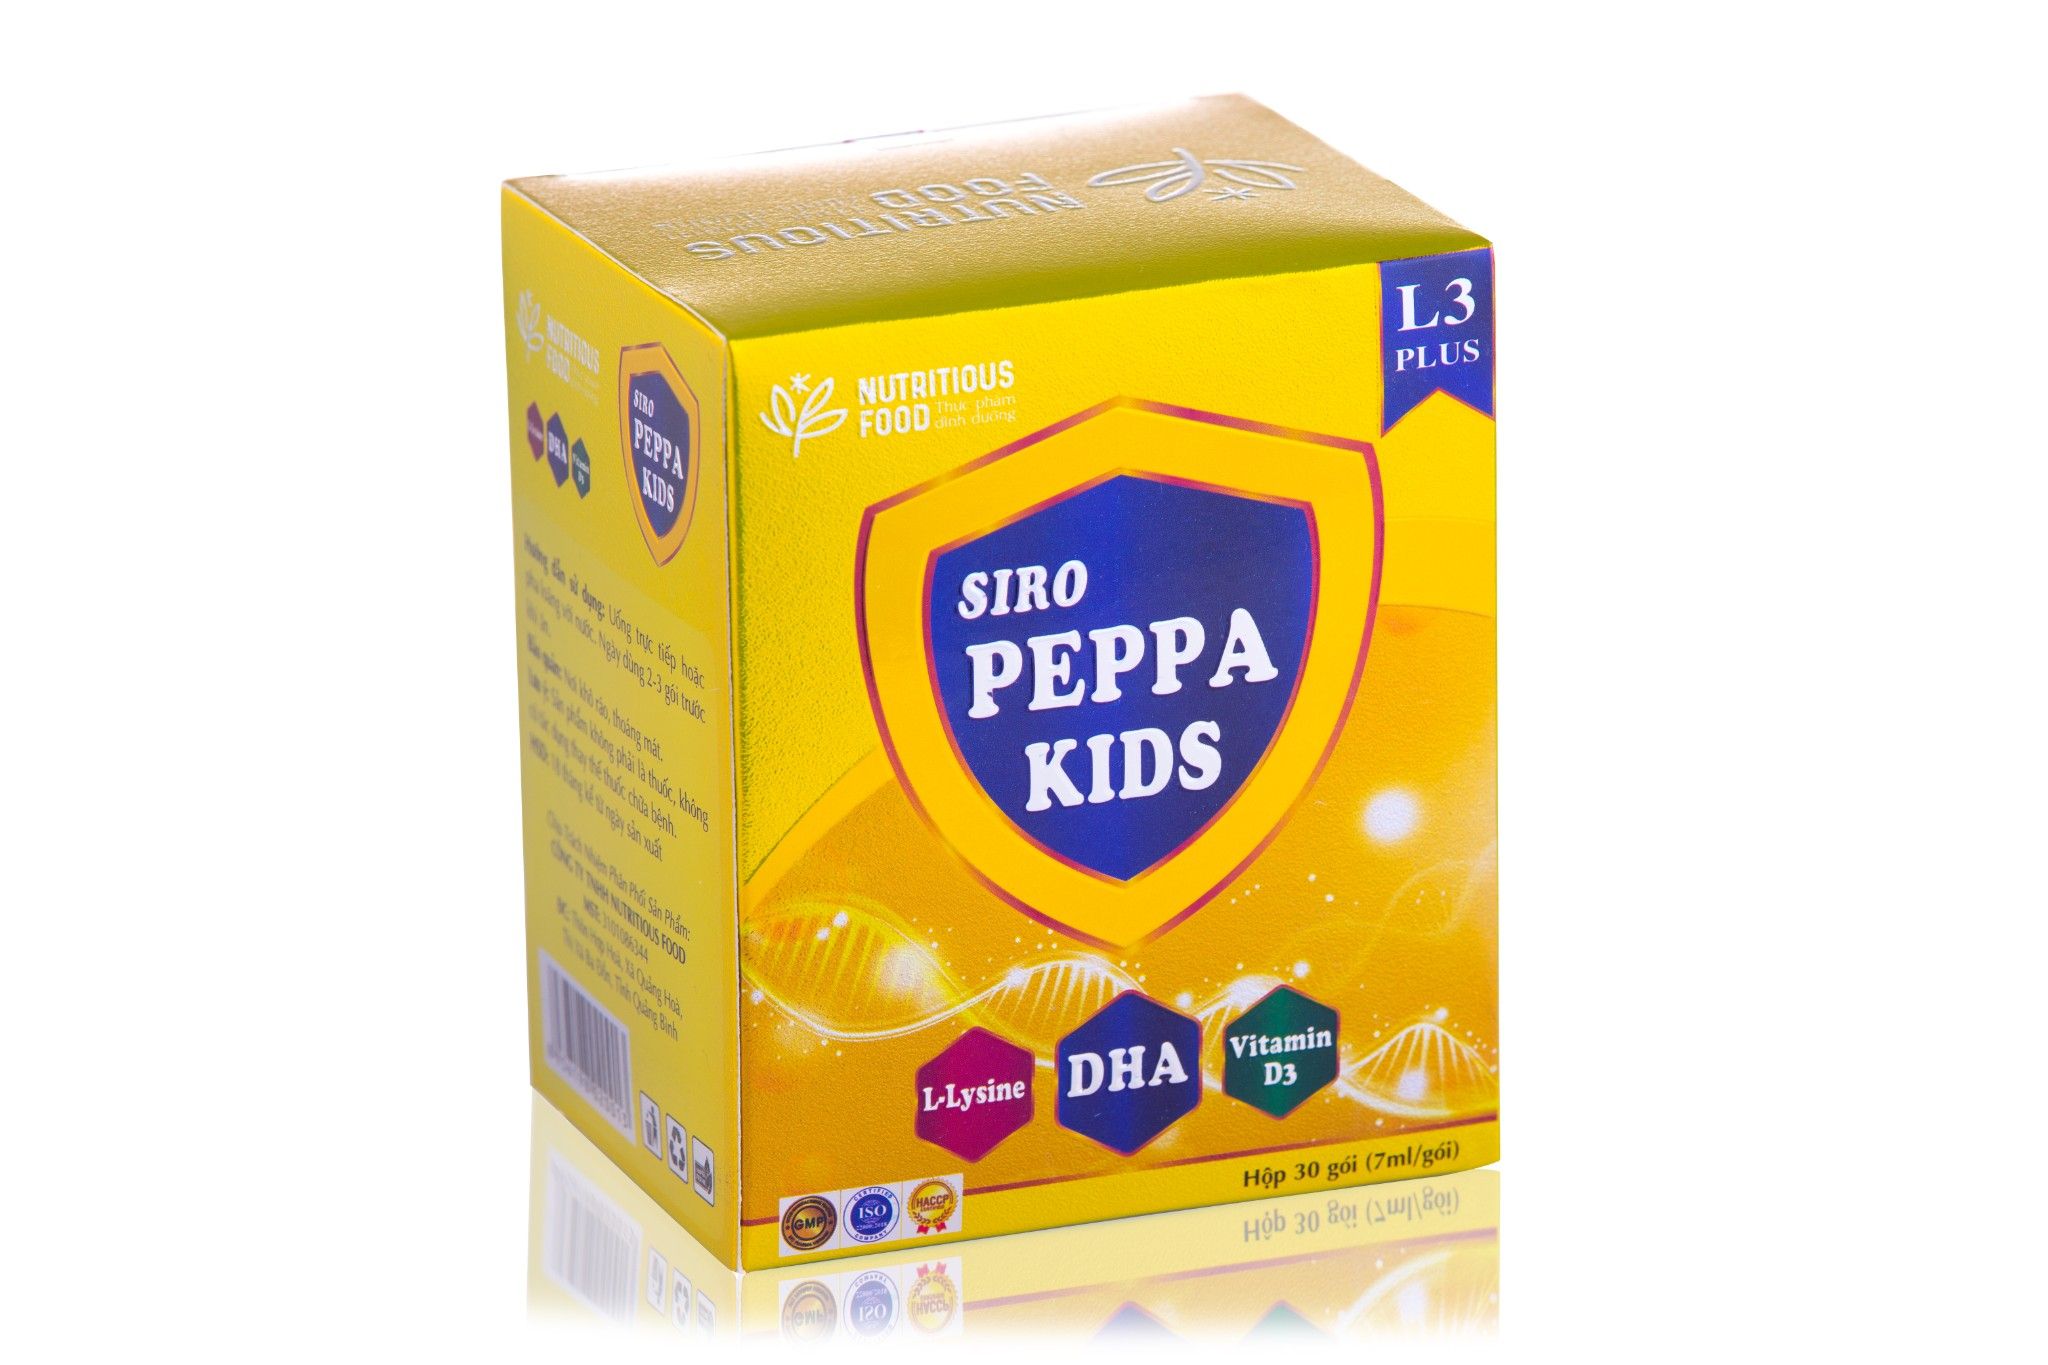  Siro Peppa Kids Plus L3 - Ăn Ngon Ngủ Ngon, Tăng Cường Đề Kháng. 